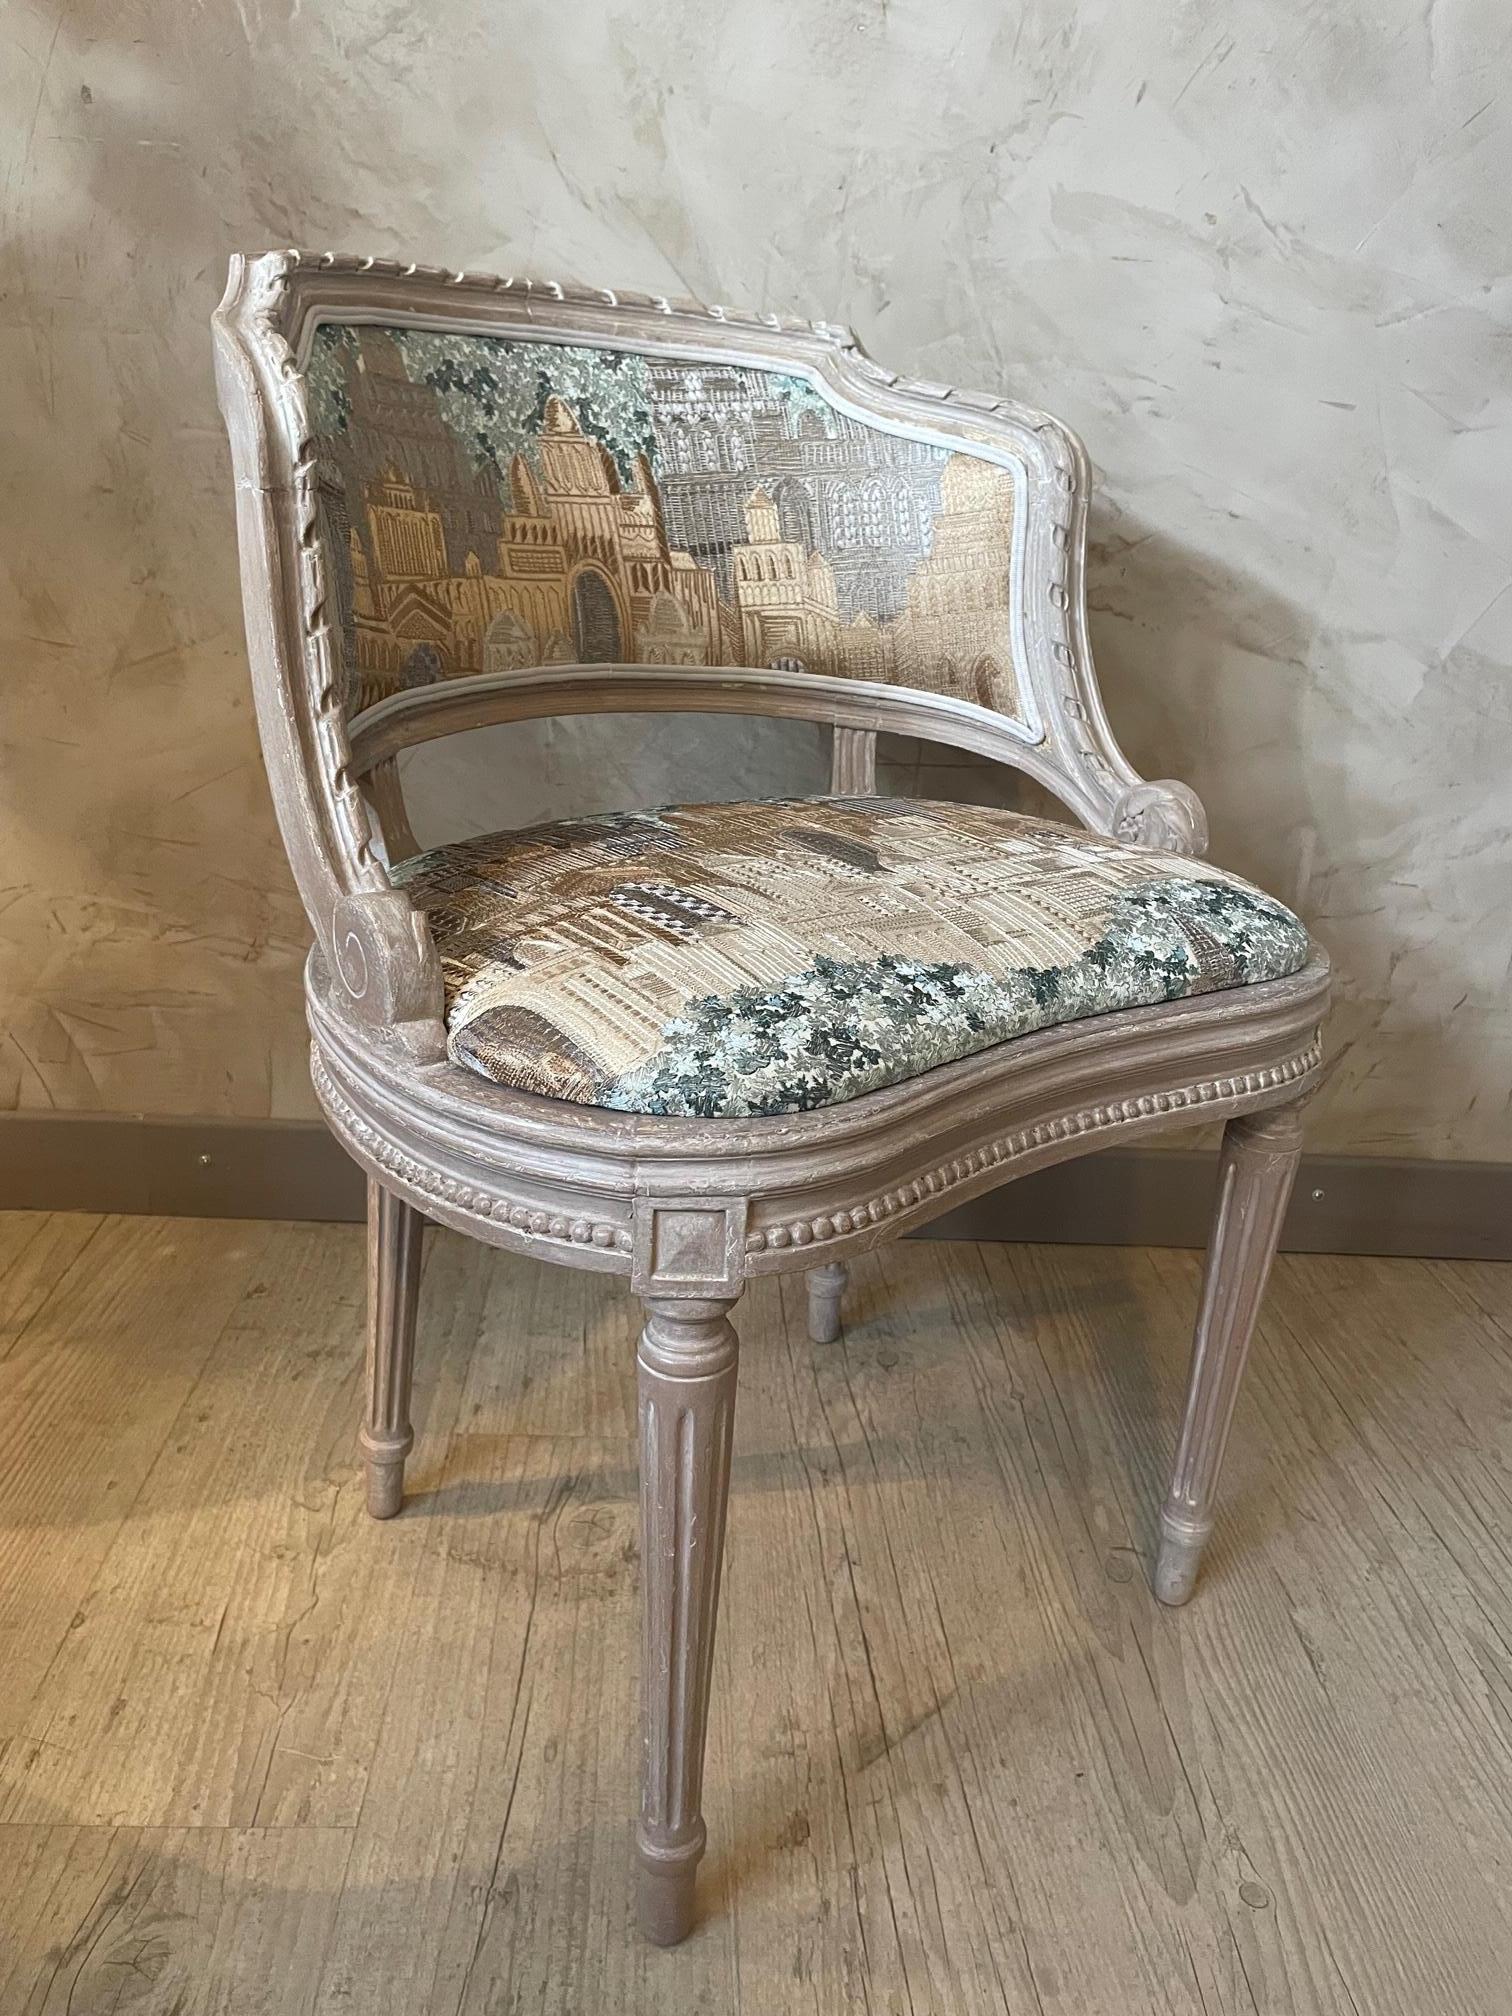 Schöner französischer Stuhl im Louis-XVI-Stil des frühen 20. Jahrhunderts. 
Wurde von einem professionellen Polsterer sorgfältig mit einem hochwertigen Stoff aus dem französischen Haus Thevenon neu gepolstert. 
Das Holz wurde gereinigt,